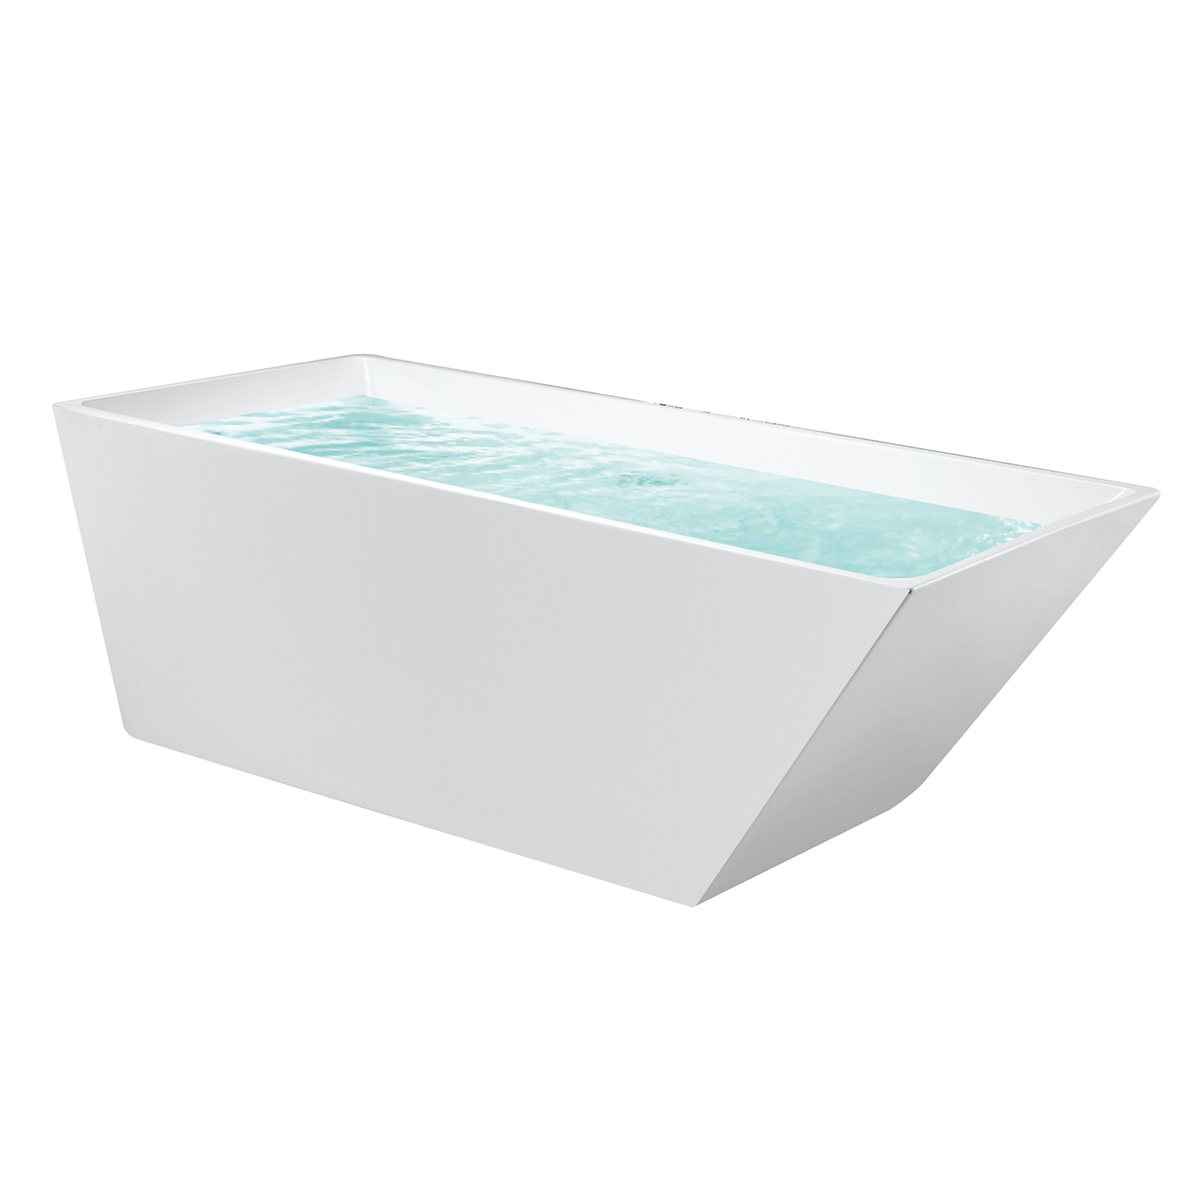 Tina de baño caliente de acrílico blanco Bañera independiente con fibra de vidrio